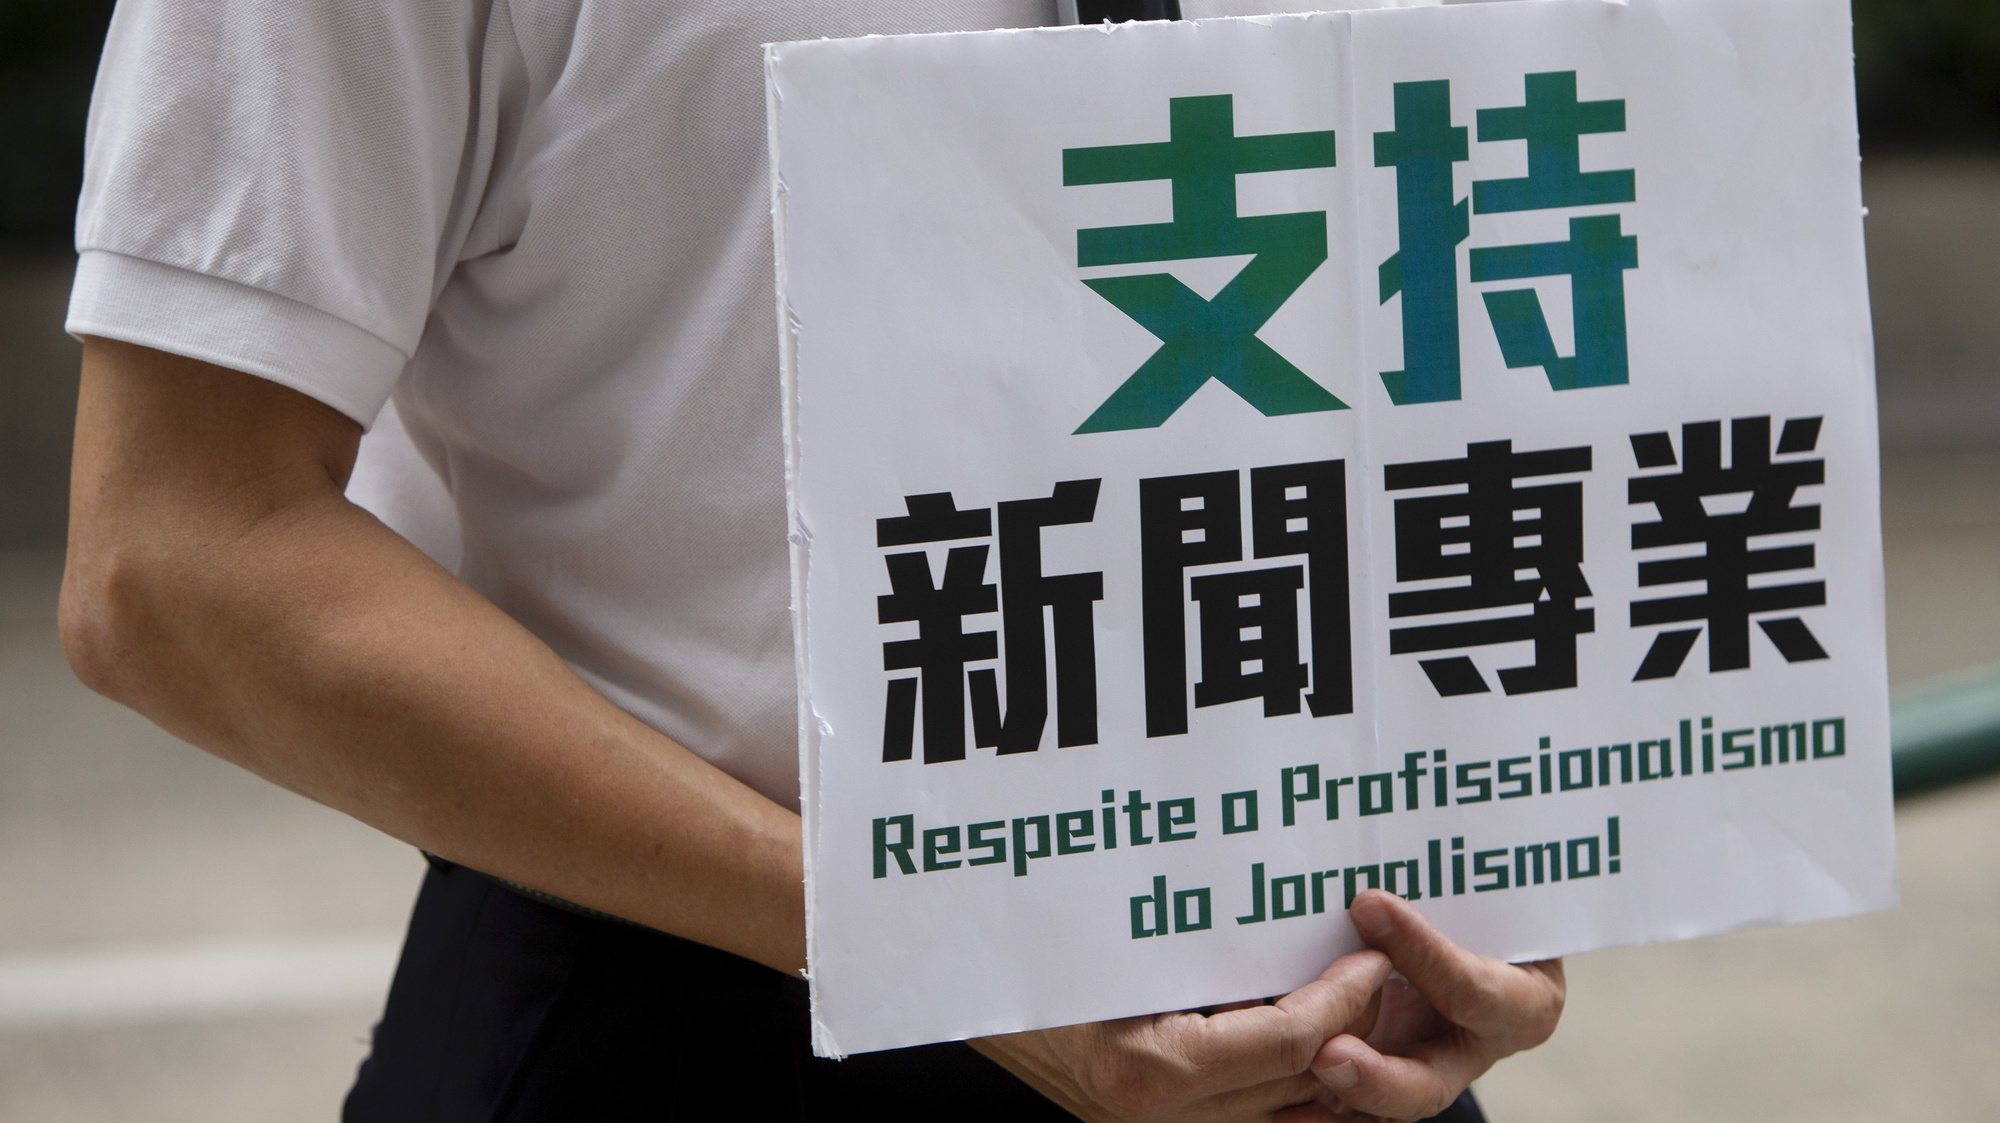 Manifestaçõa de apoio à liberdade de imprensa em Macau, frente às instalações da TDM. Macau, China, 4 de Abril de 2021, CARMO CORREIA/LUSA